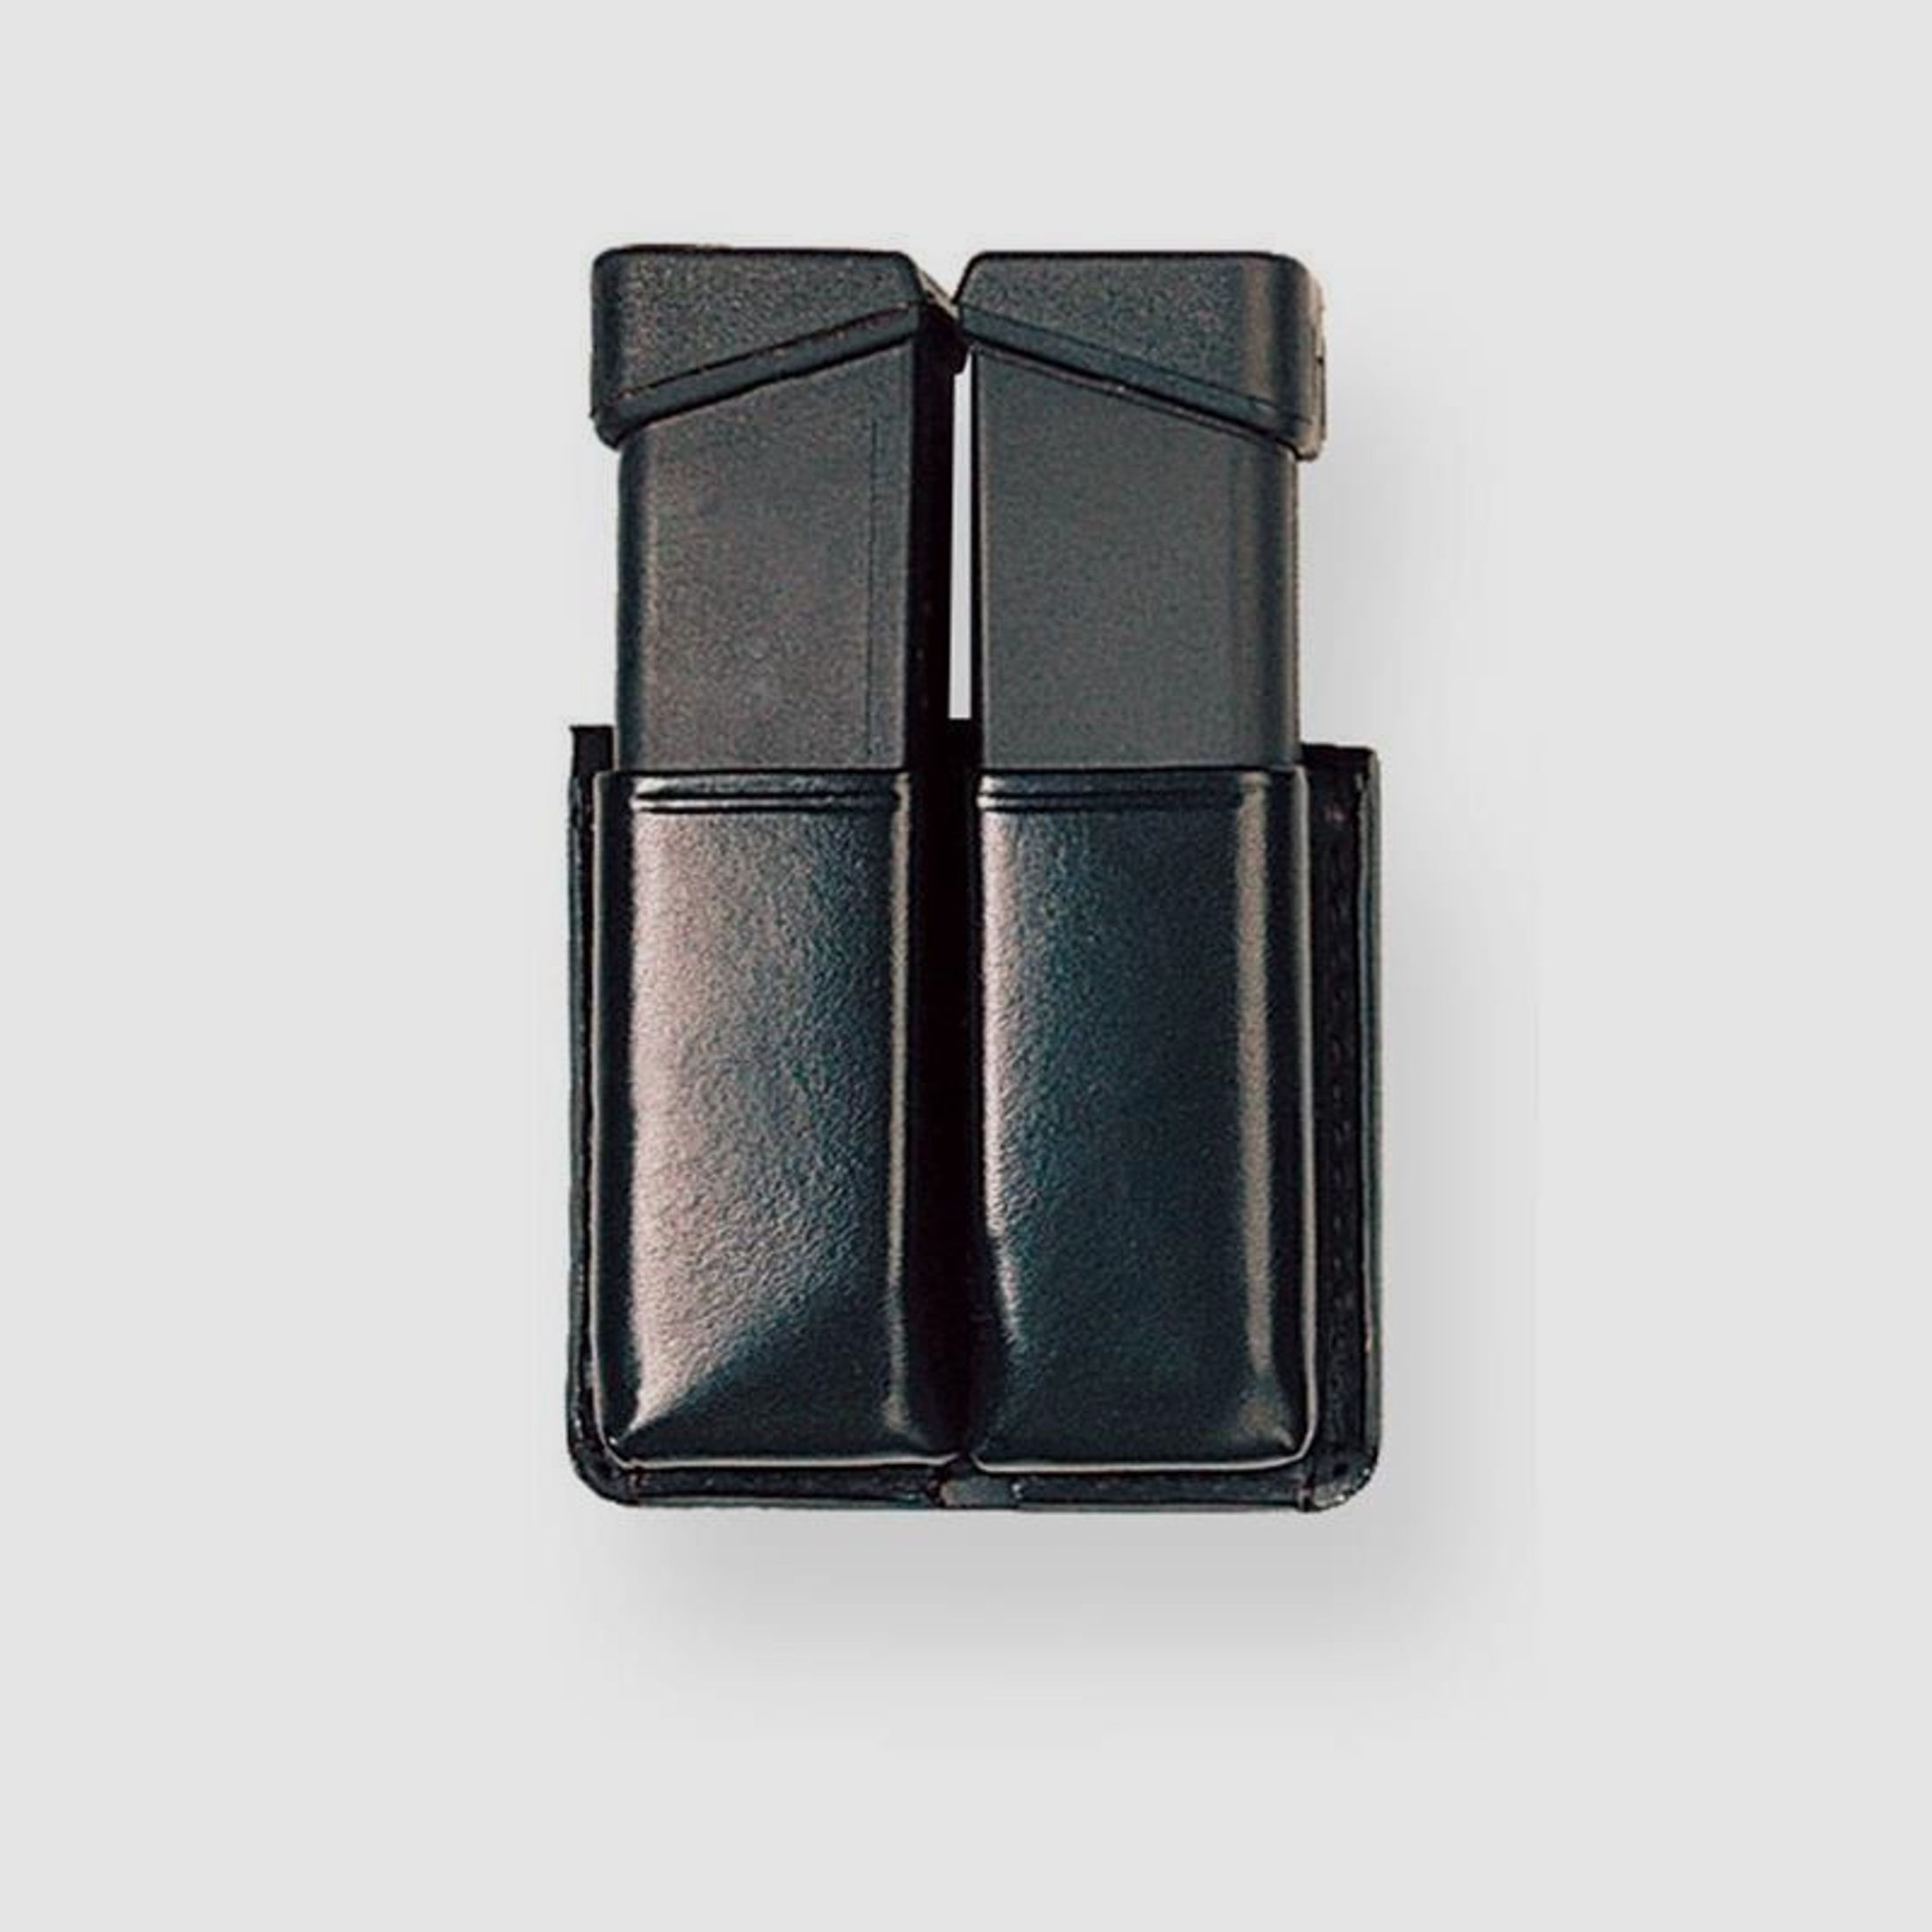 Magazinhalter TWIN Box 9 x 19 zweireihig SIG 226 / CZ M75 ( 21 x 32 mm ) Braun